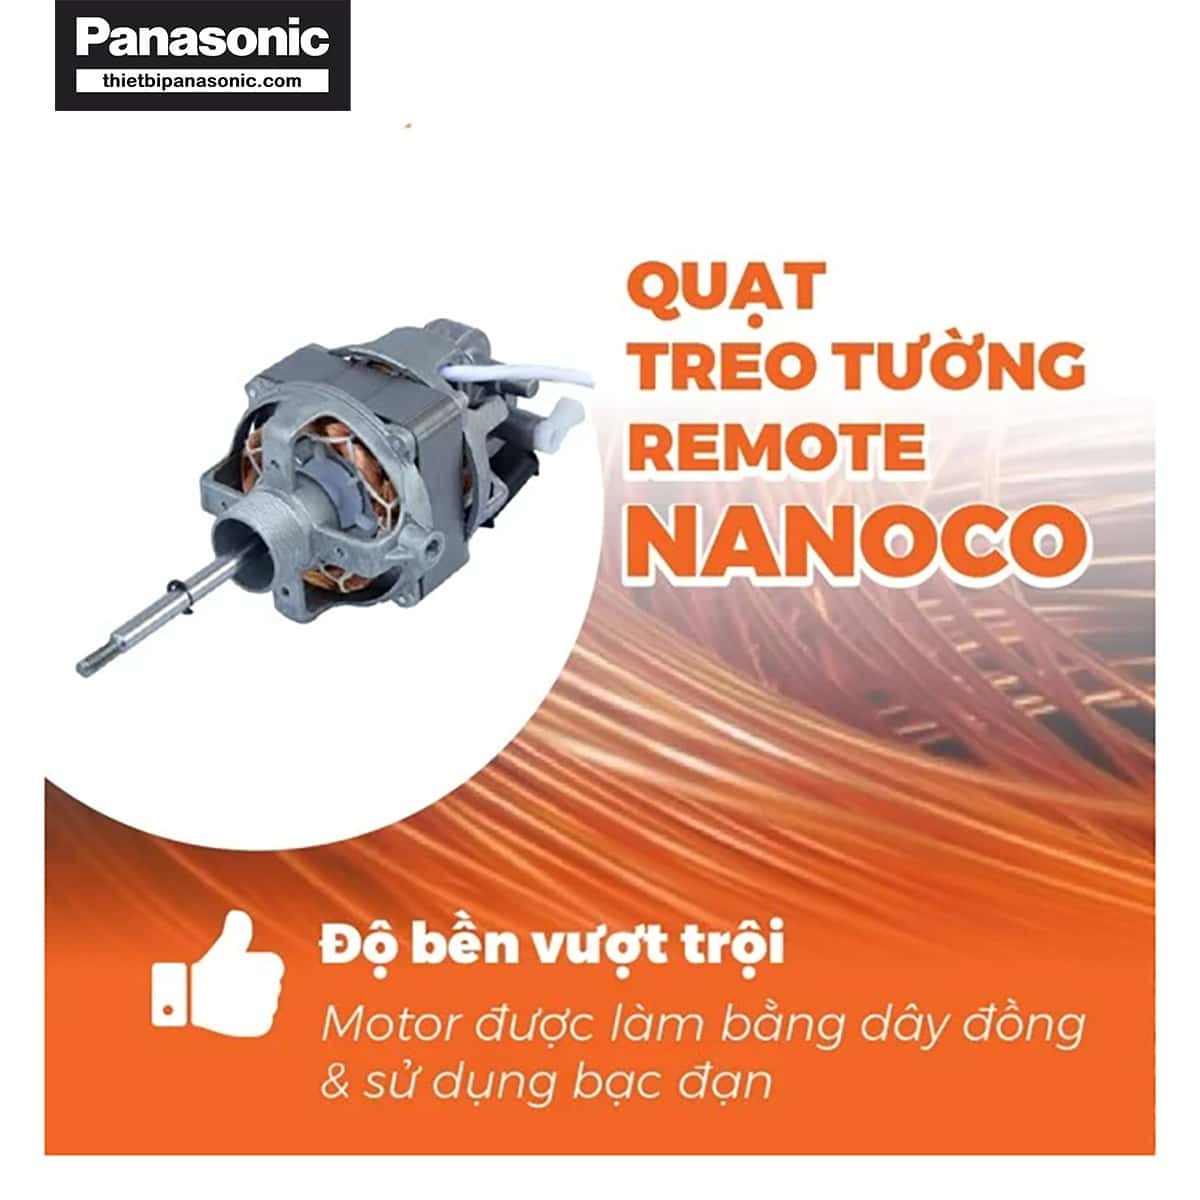 Quạt treo tường Nanoco NWF1610RC-G màu xám có độ bền vượt trội nhờ sử dụng động cơ dây đồng và bạc đạn (vòng bi)